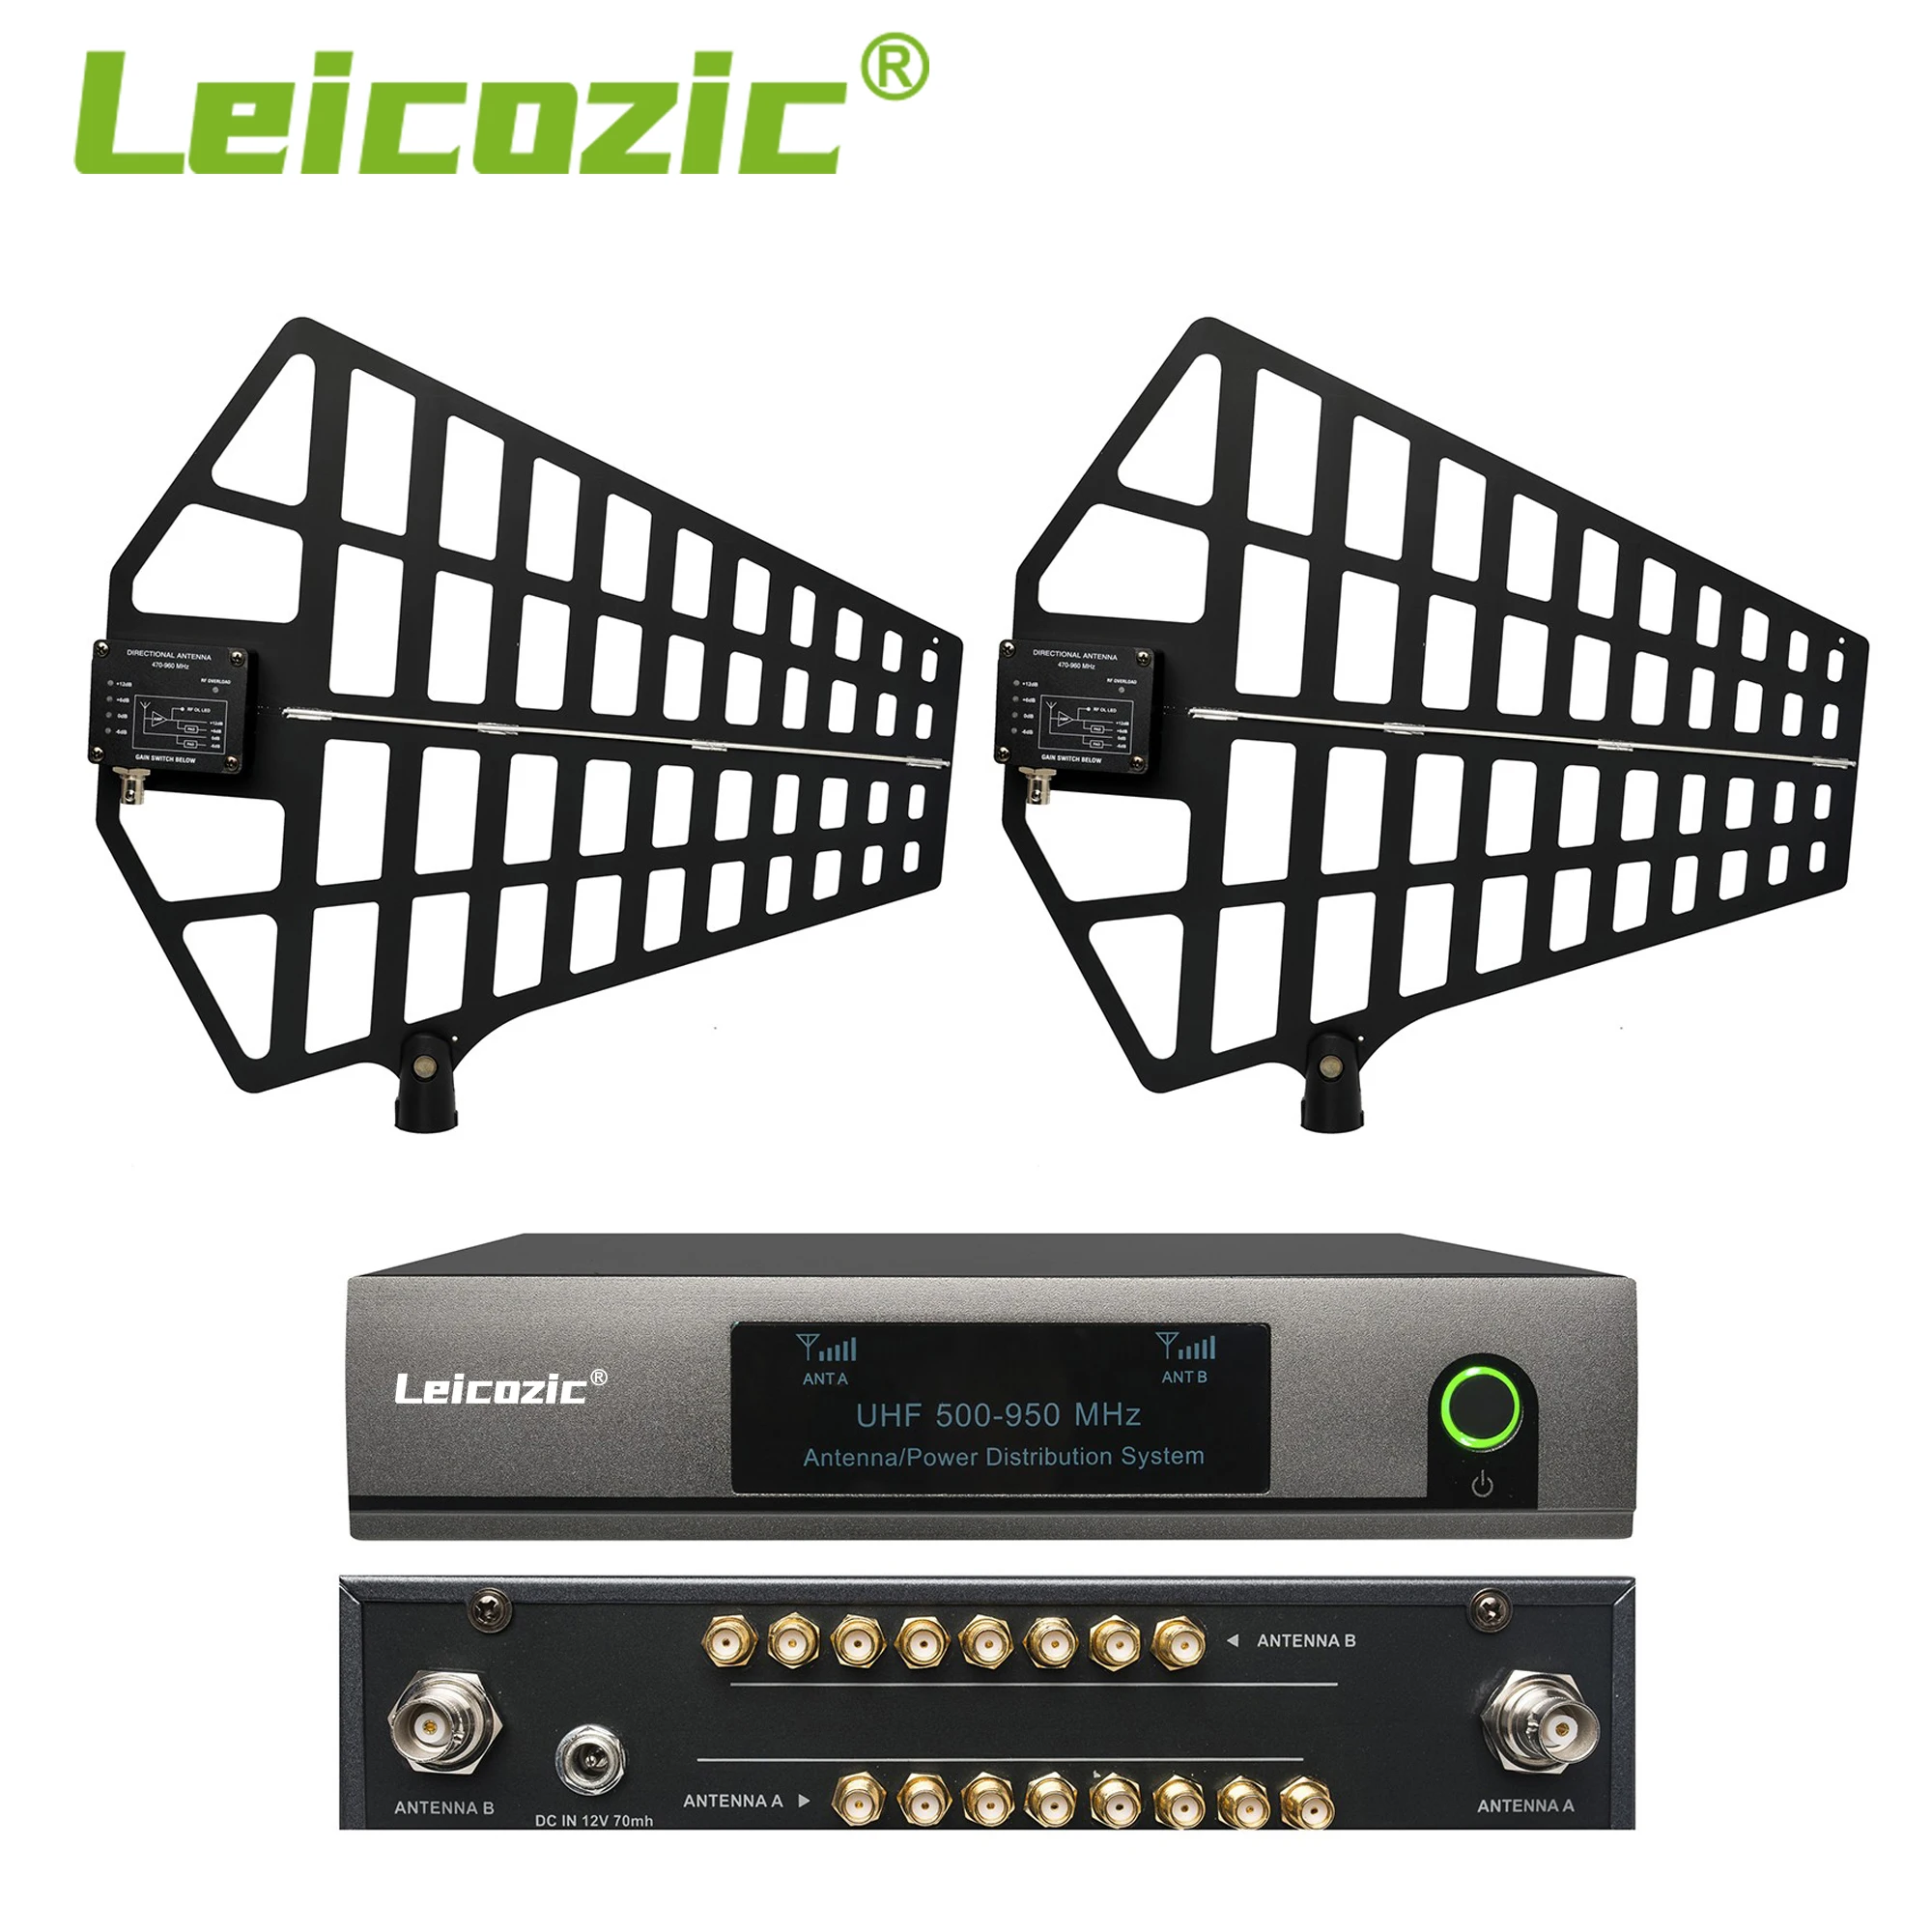 Leicozic 8-Канальная Антенная Распределительная Система Splitter UA868 Усилитель Сигнала 500-950 МГц Pro Audio Equipos De Музыкальный Инструмент